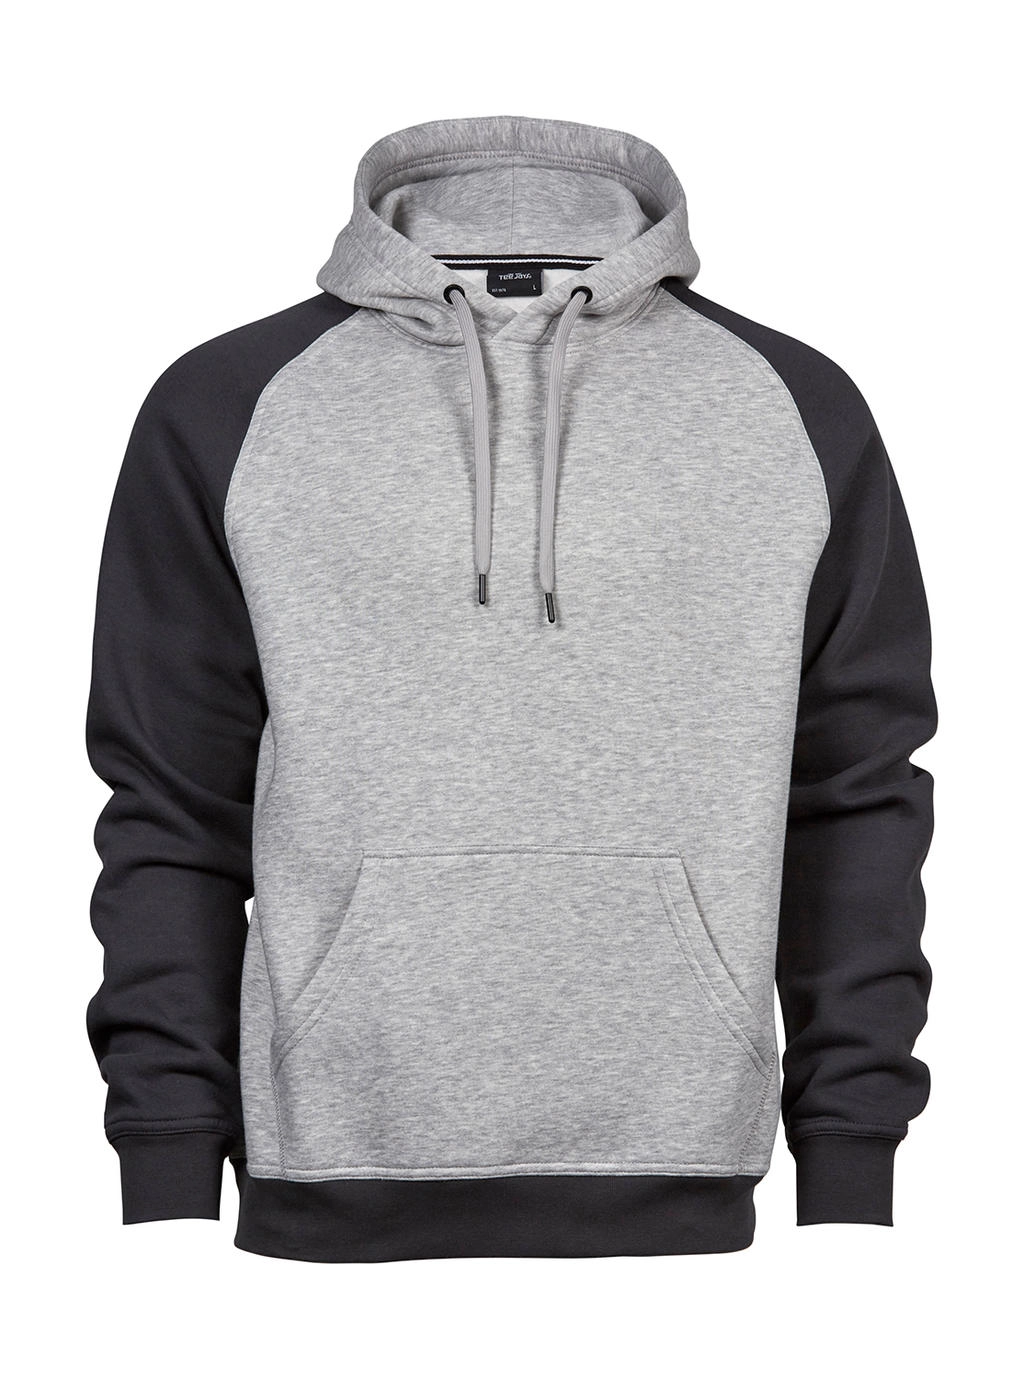 Two-Tone Hooded Sweatshirt zum Besticken und Bedrucken in der Farbe Heather/Dark Grey mit Ihren Logo, Schriftzug oder Motiv.